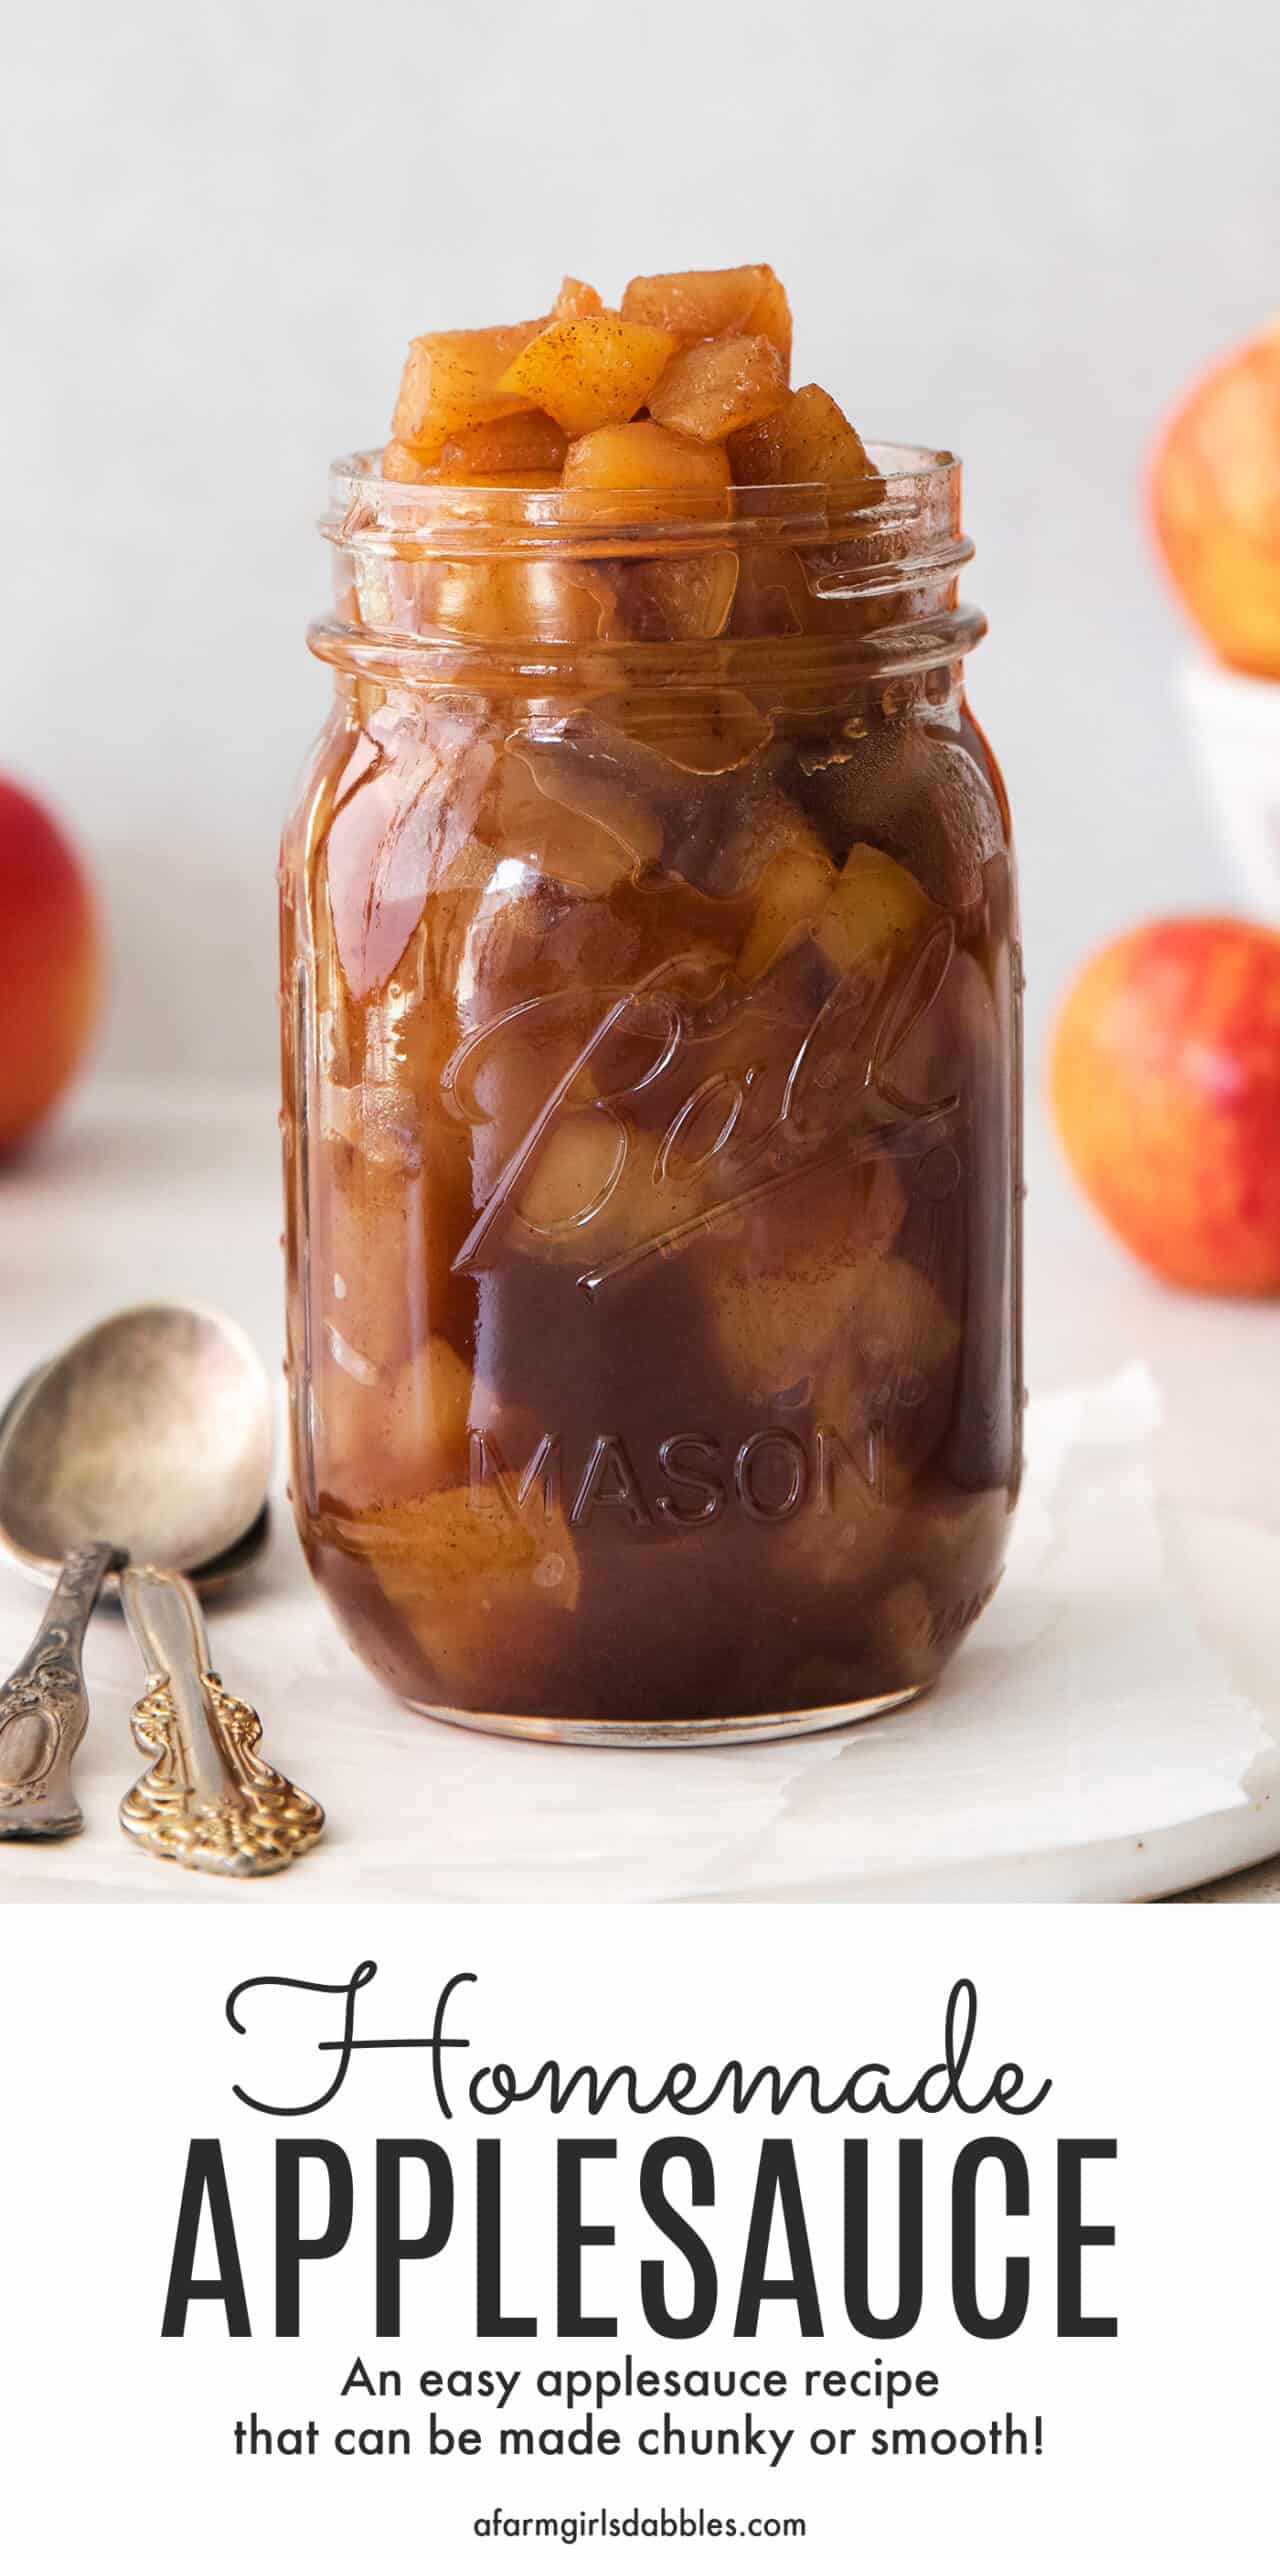 Pinterest image for homemade applesauce recipe